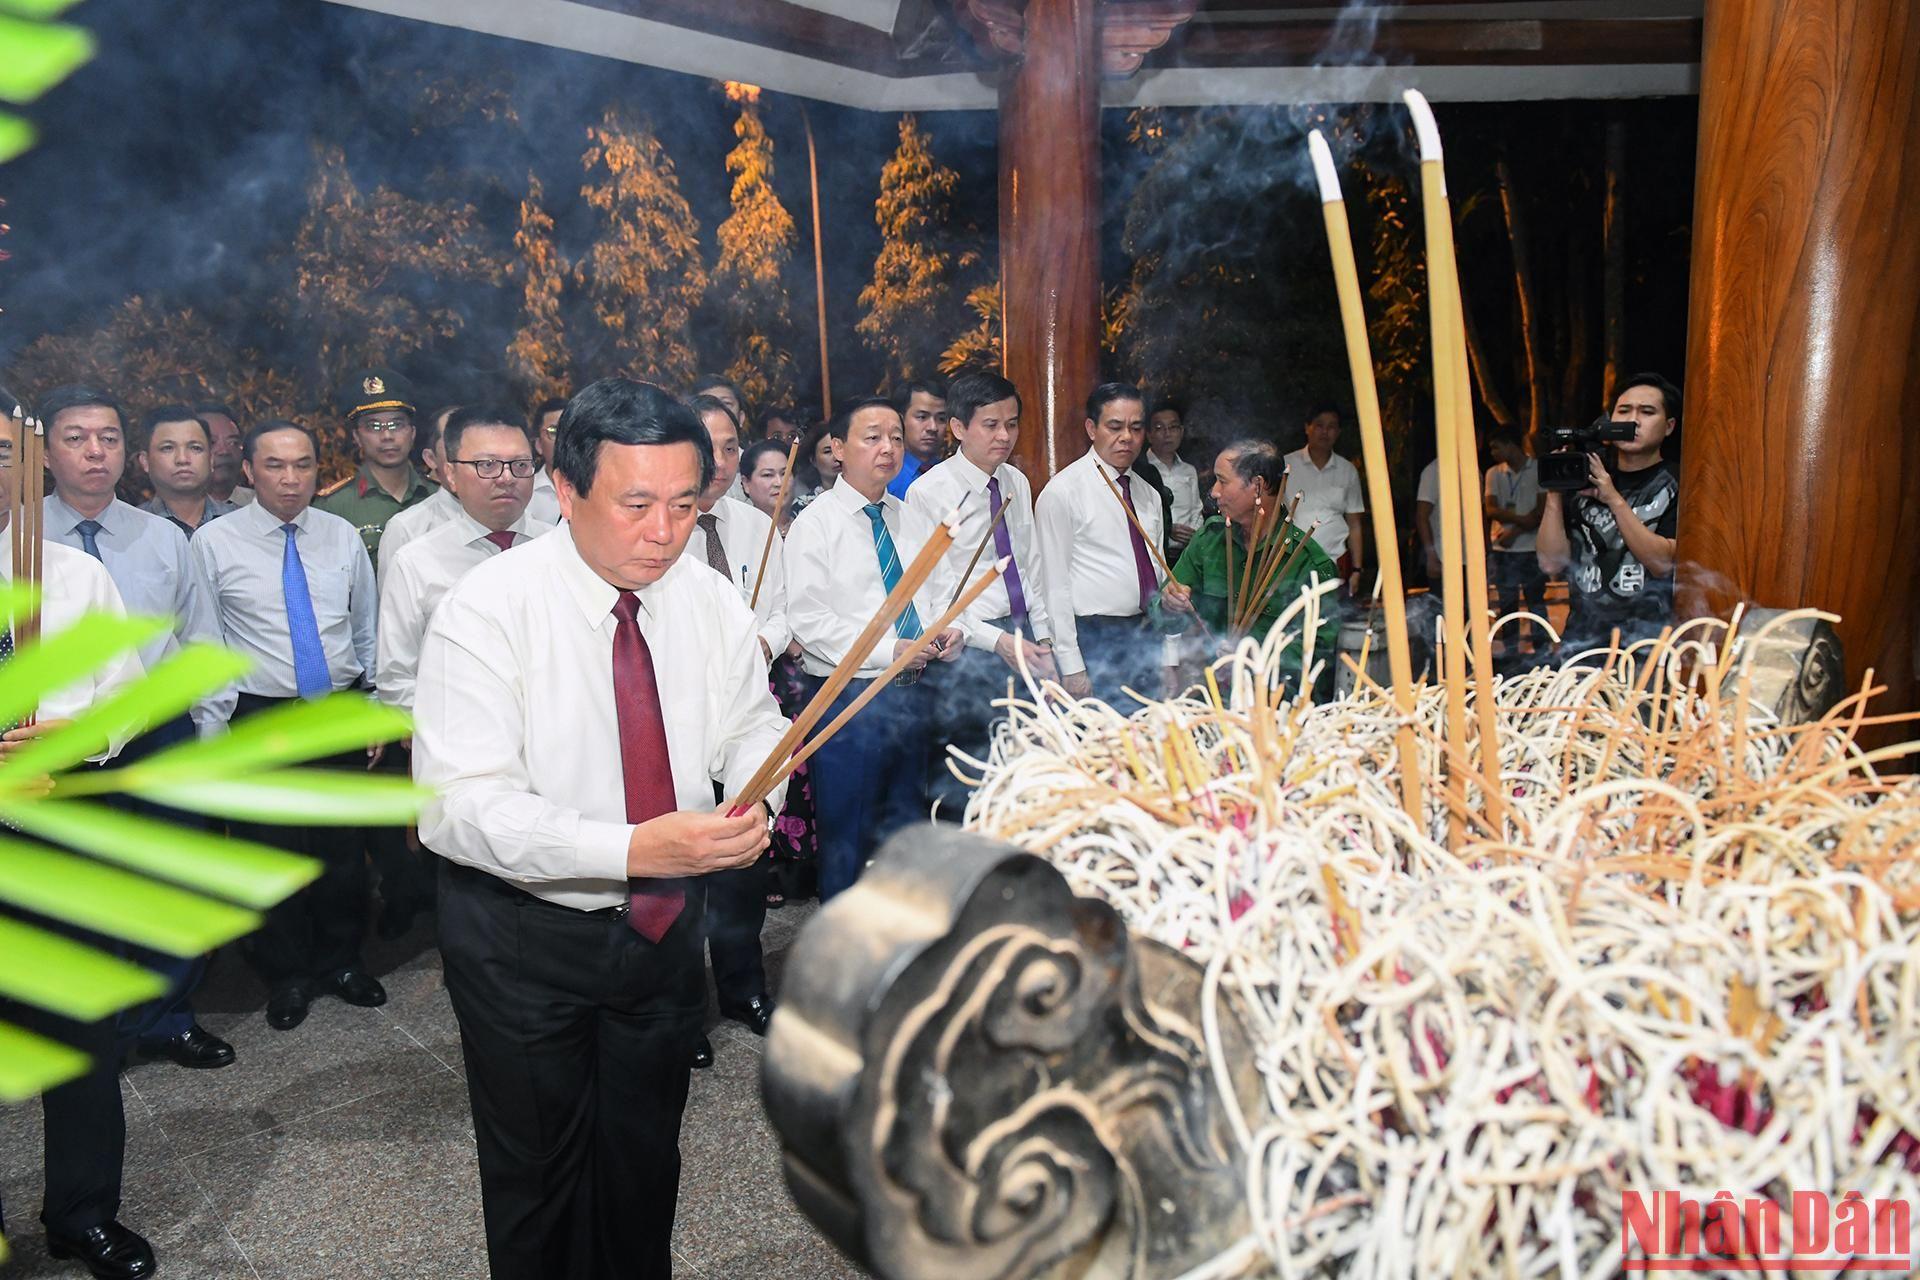 Đồng chí Nguyễn Xuân Thắng và các đồng chí trong đoàn đã đến dâng hương, đặt vòng hoa tại Nhà bia tưởng niệm liệt sỹ TNXP toàn quốc - nơi ghi danh hơn 4.000 liệt sỹ TNXP trong cả nước.